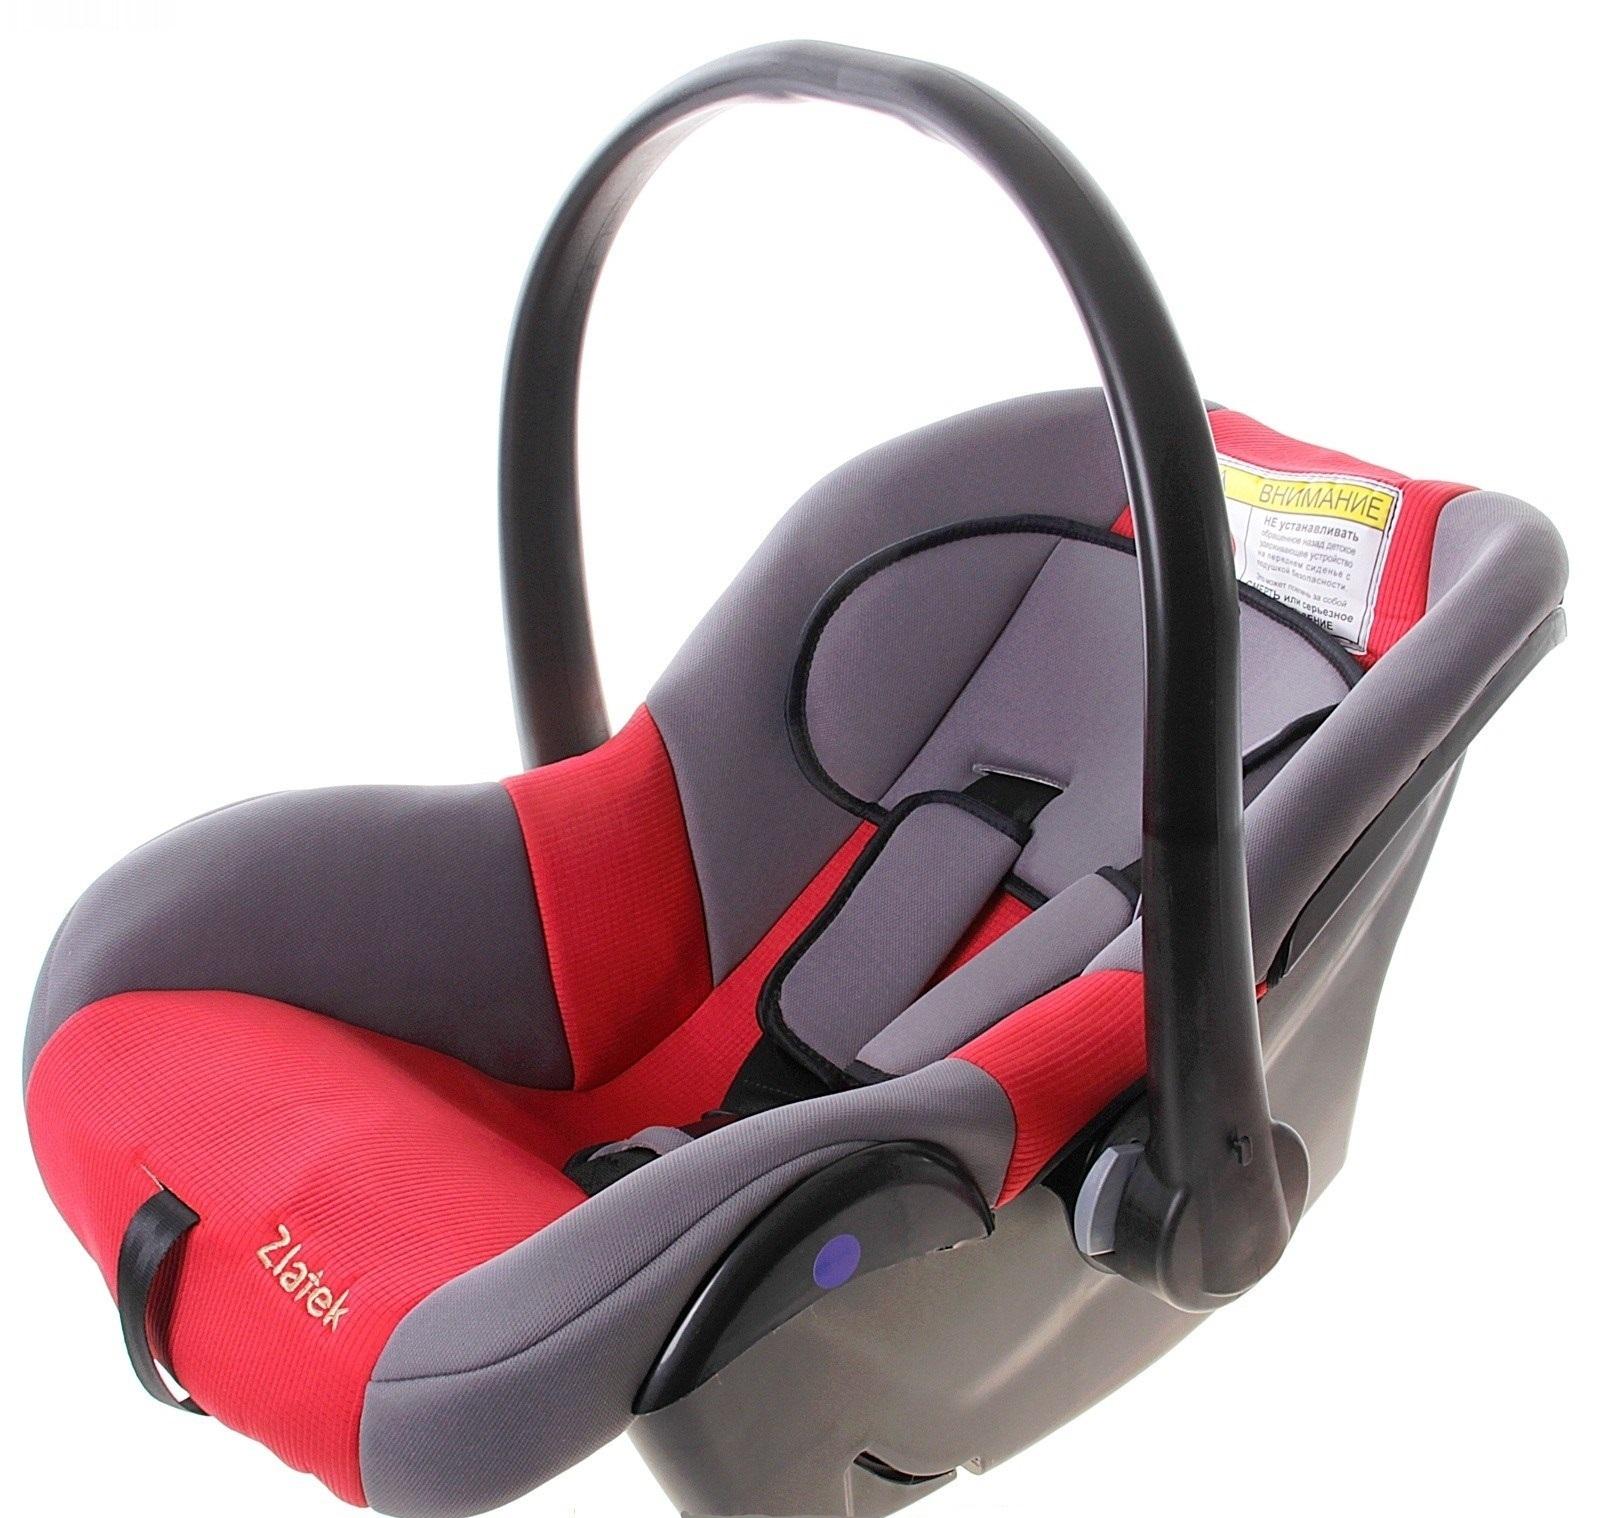 кресло для ребенка в машину до 1 года